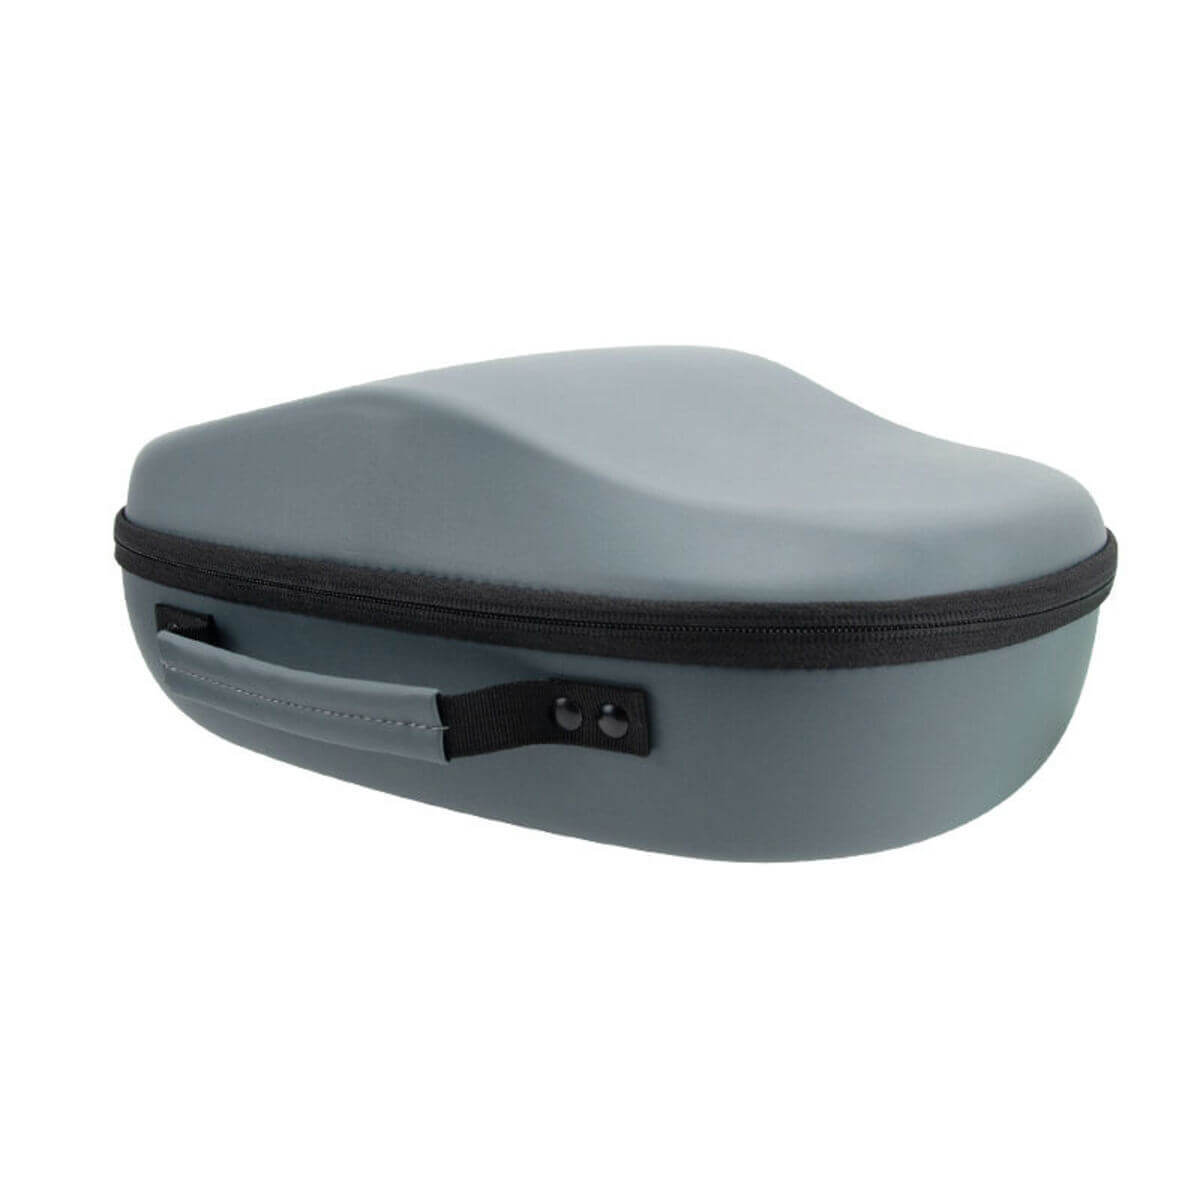 PICO 4 VR Glasses Storage Box